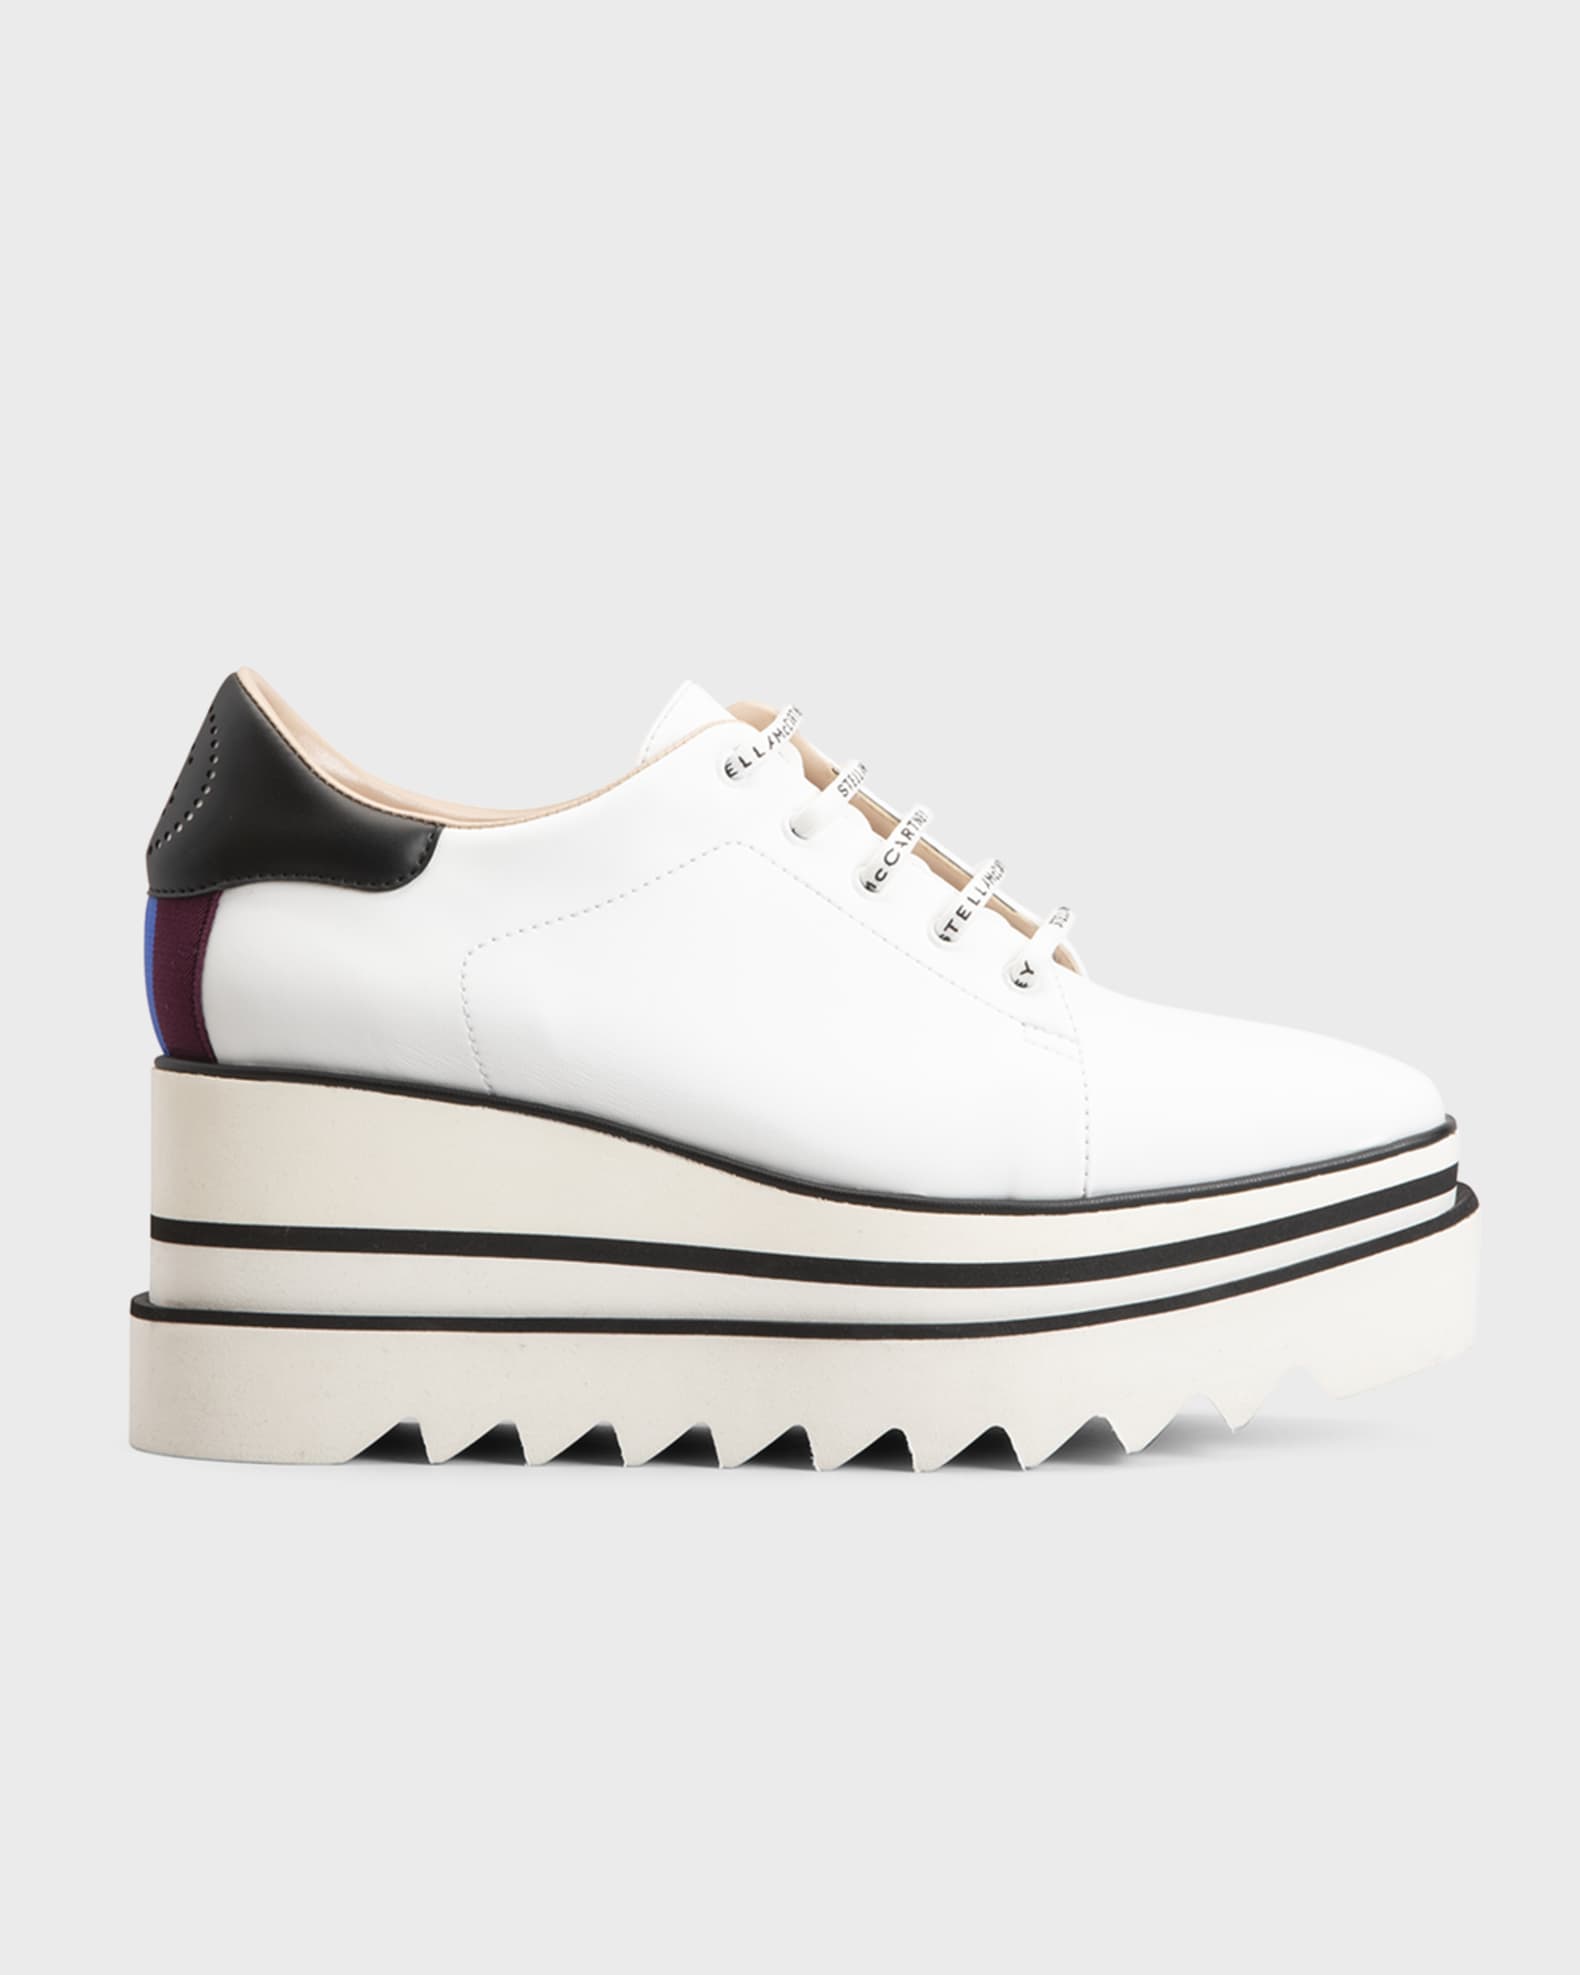 Stella McCartney Sneakelyse Vegan Sneaker Loafers | Neiman Marcus